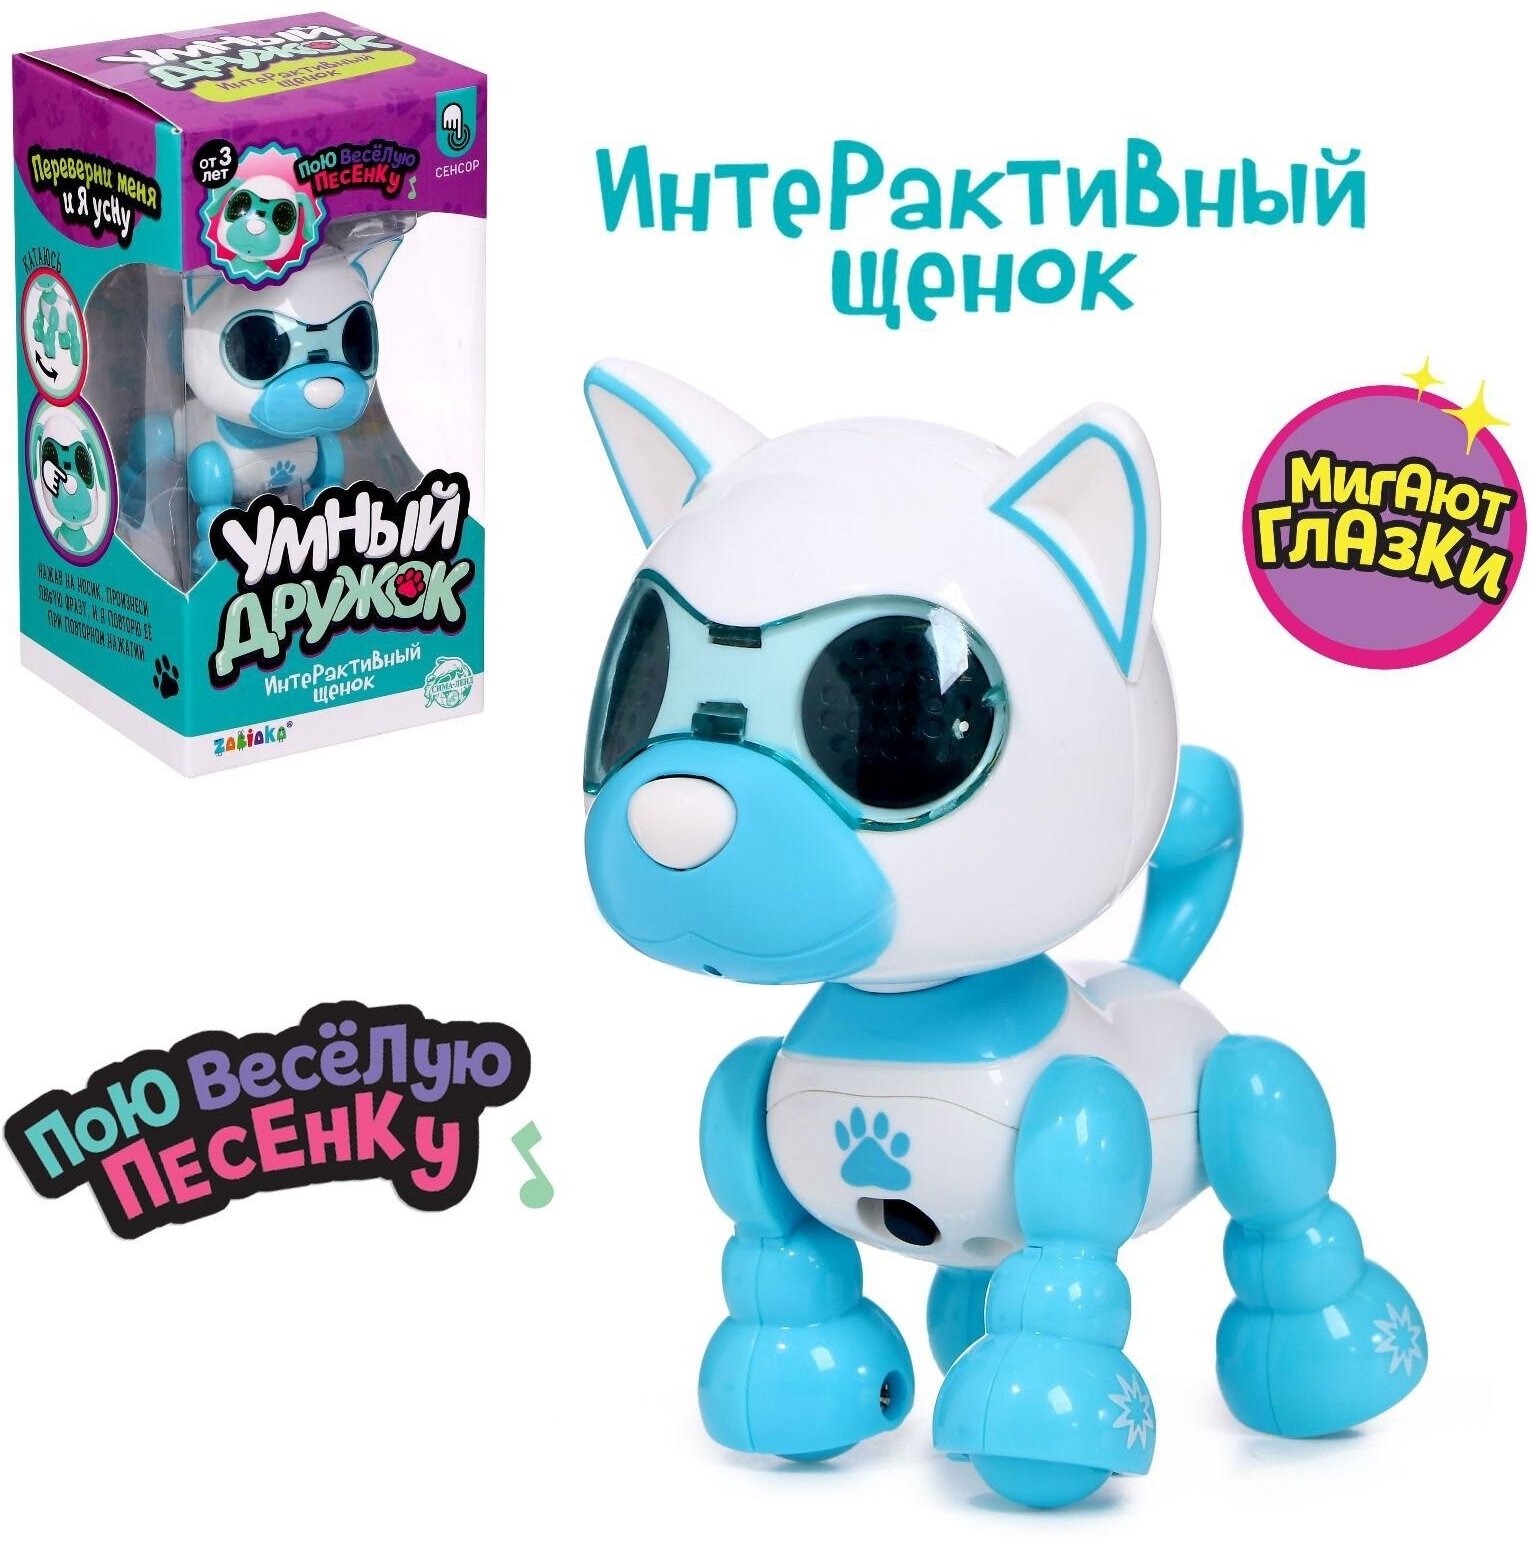 Робот-щенок "Умный дружок", световые и звуковые эффекты, интерактивная игрушка для детей и малышей от 3 лет